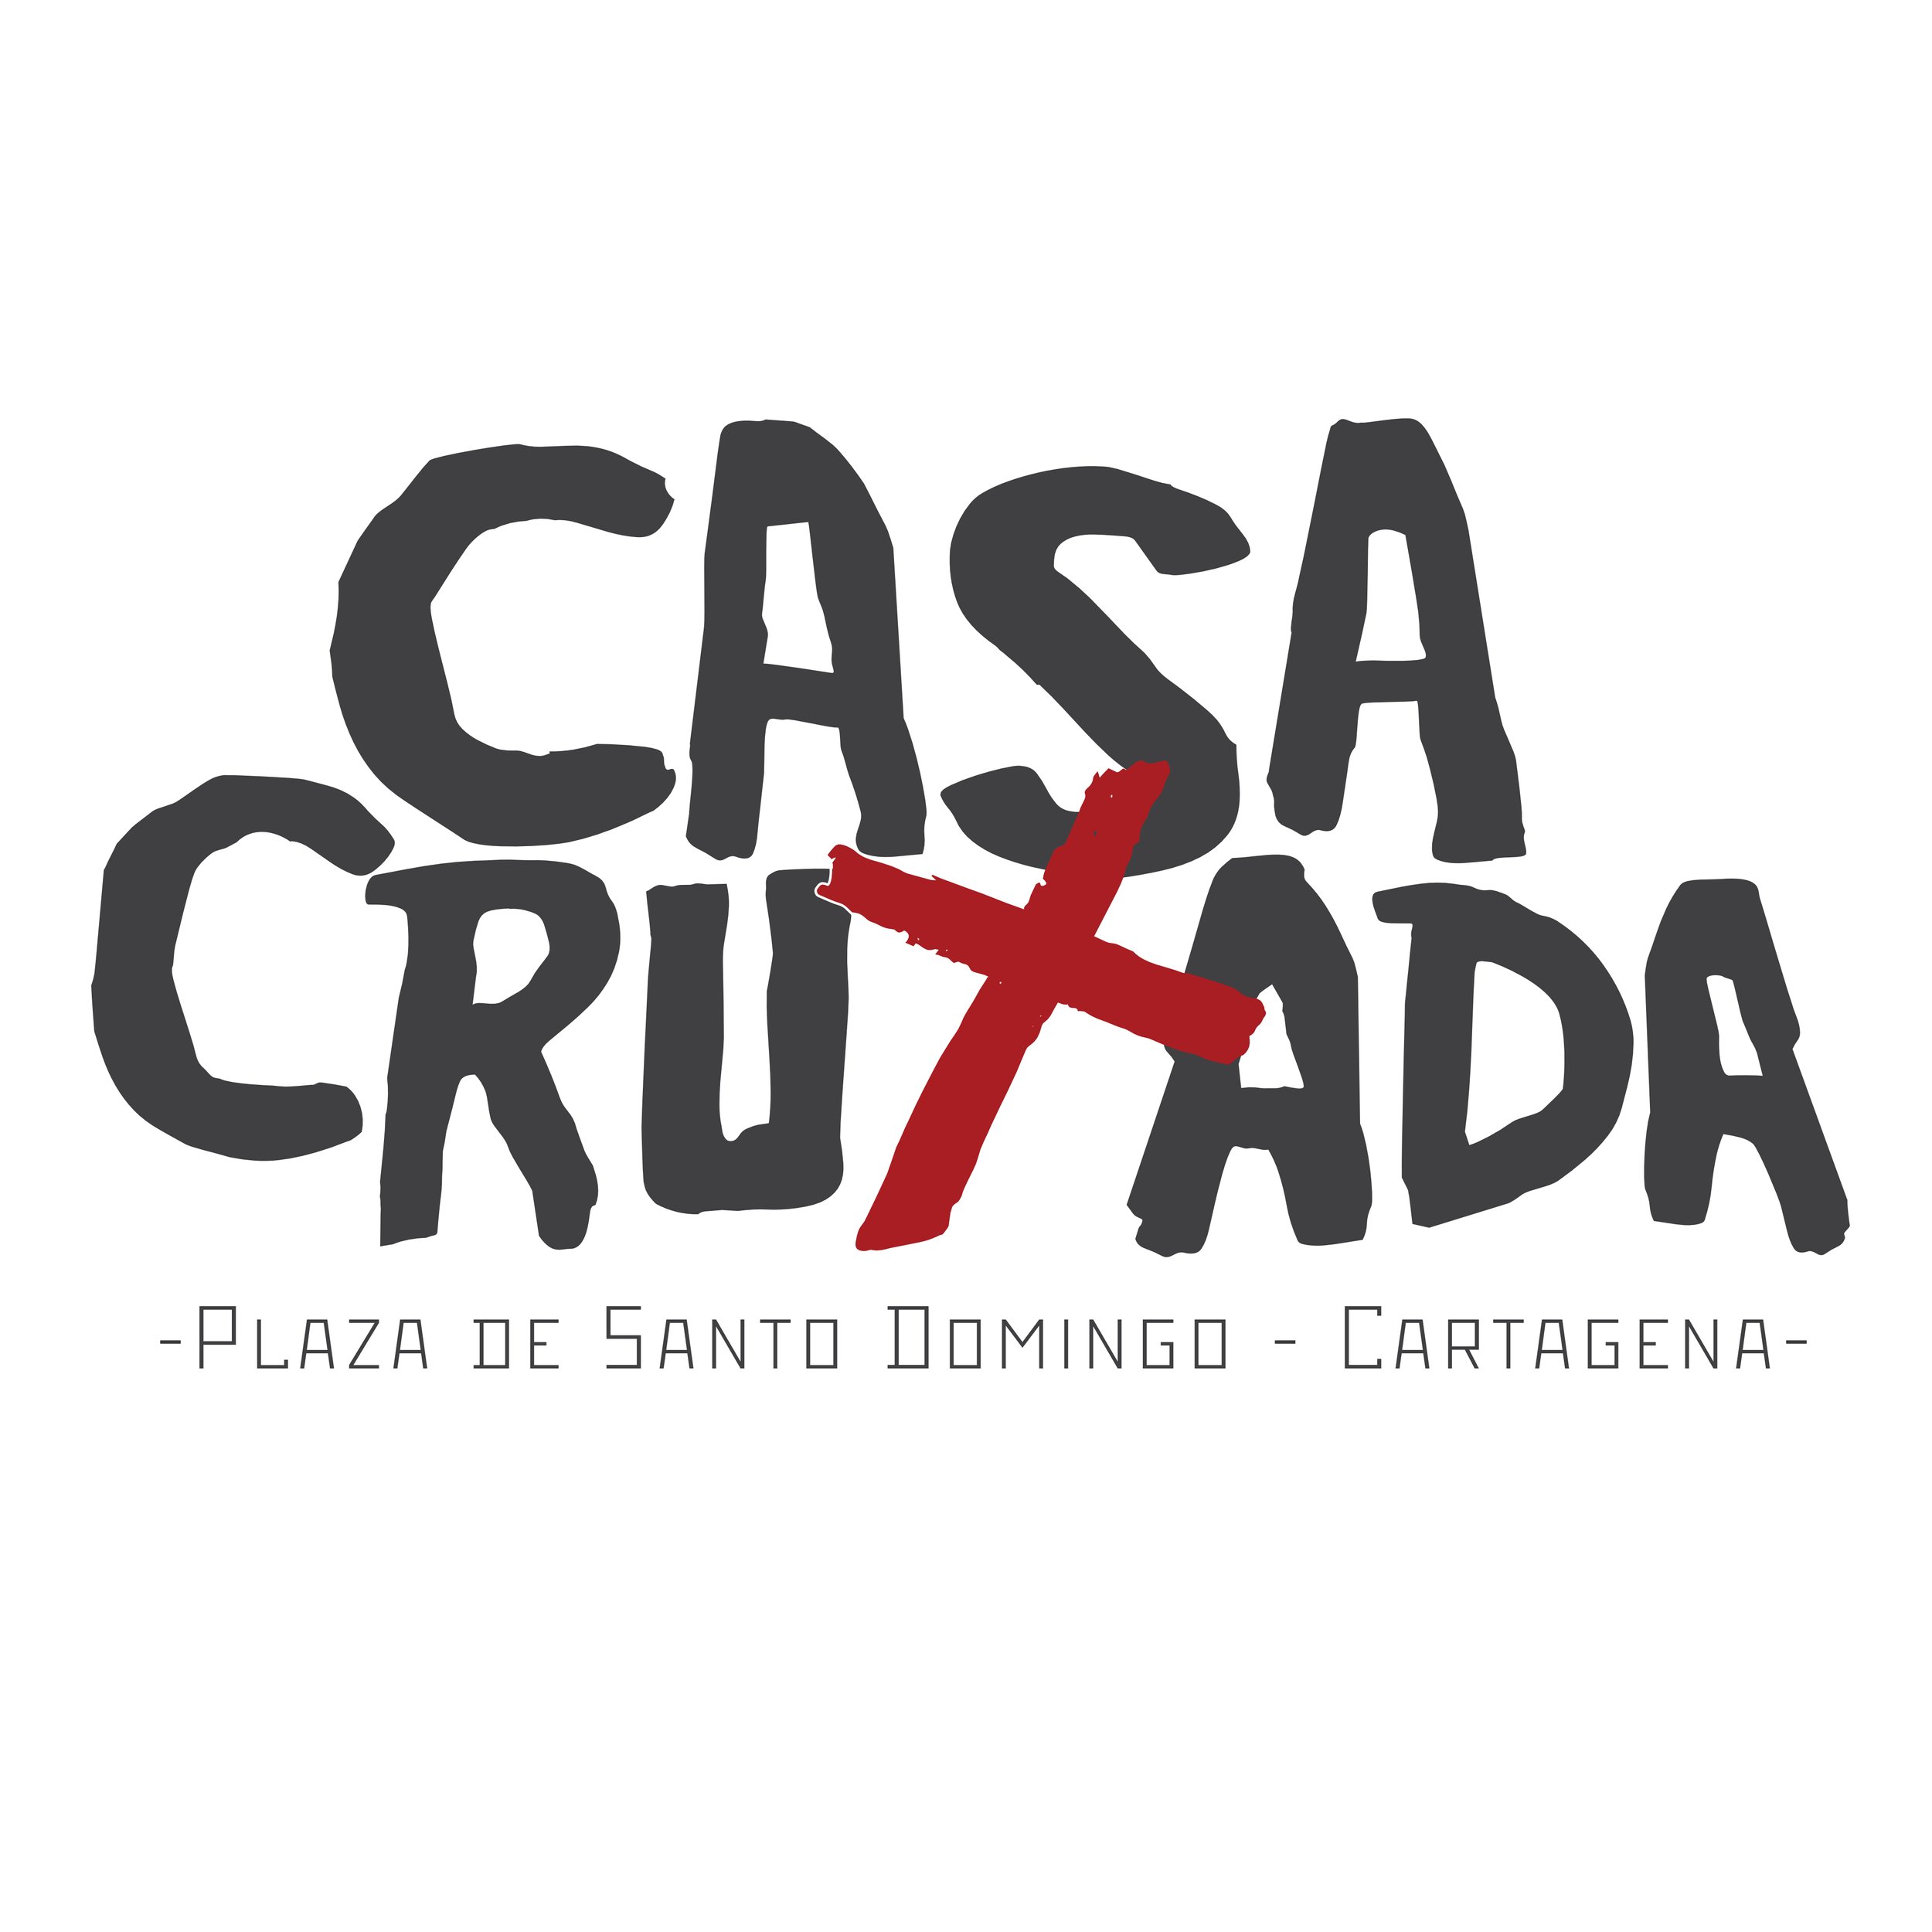 Casa Cruxada Cartagena (Copy)